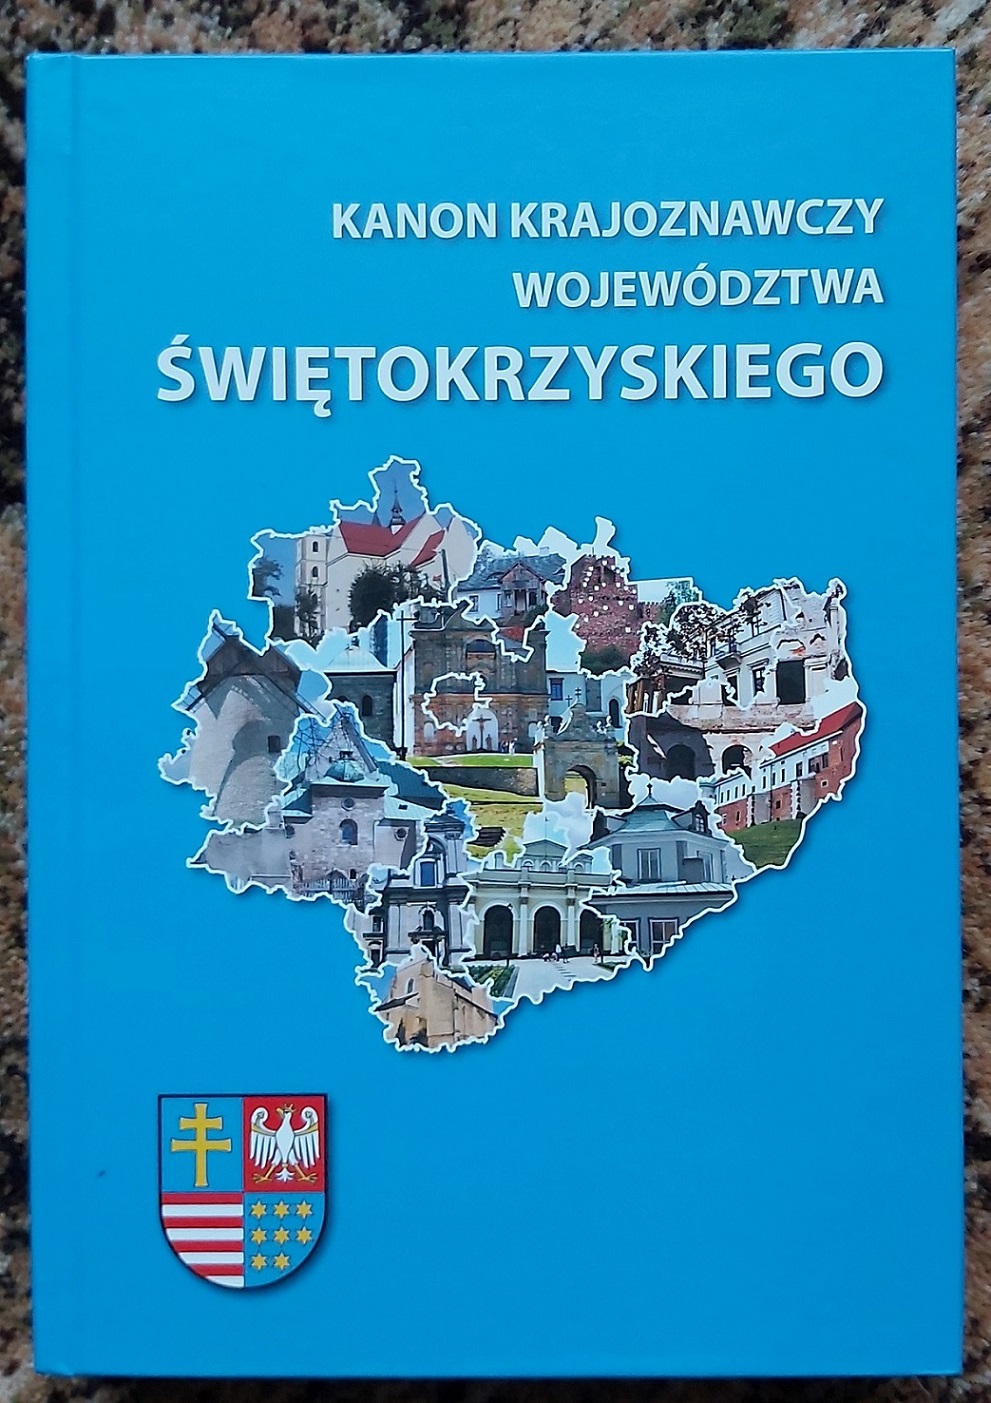 Kanon krajoznawczy województwa świętokrzyskiego